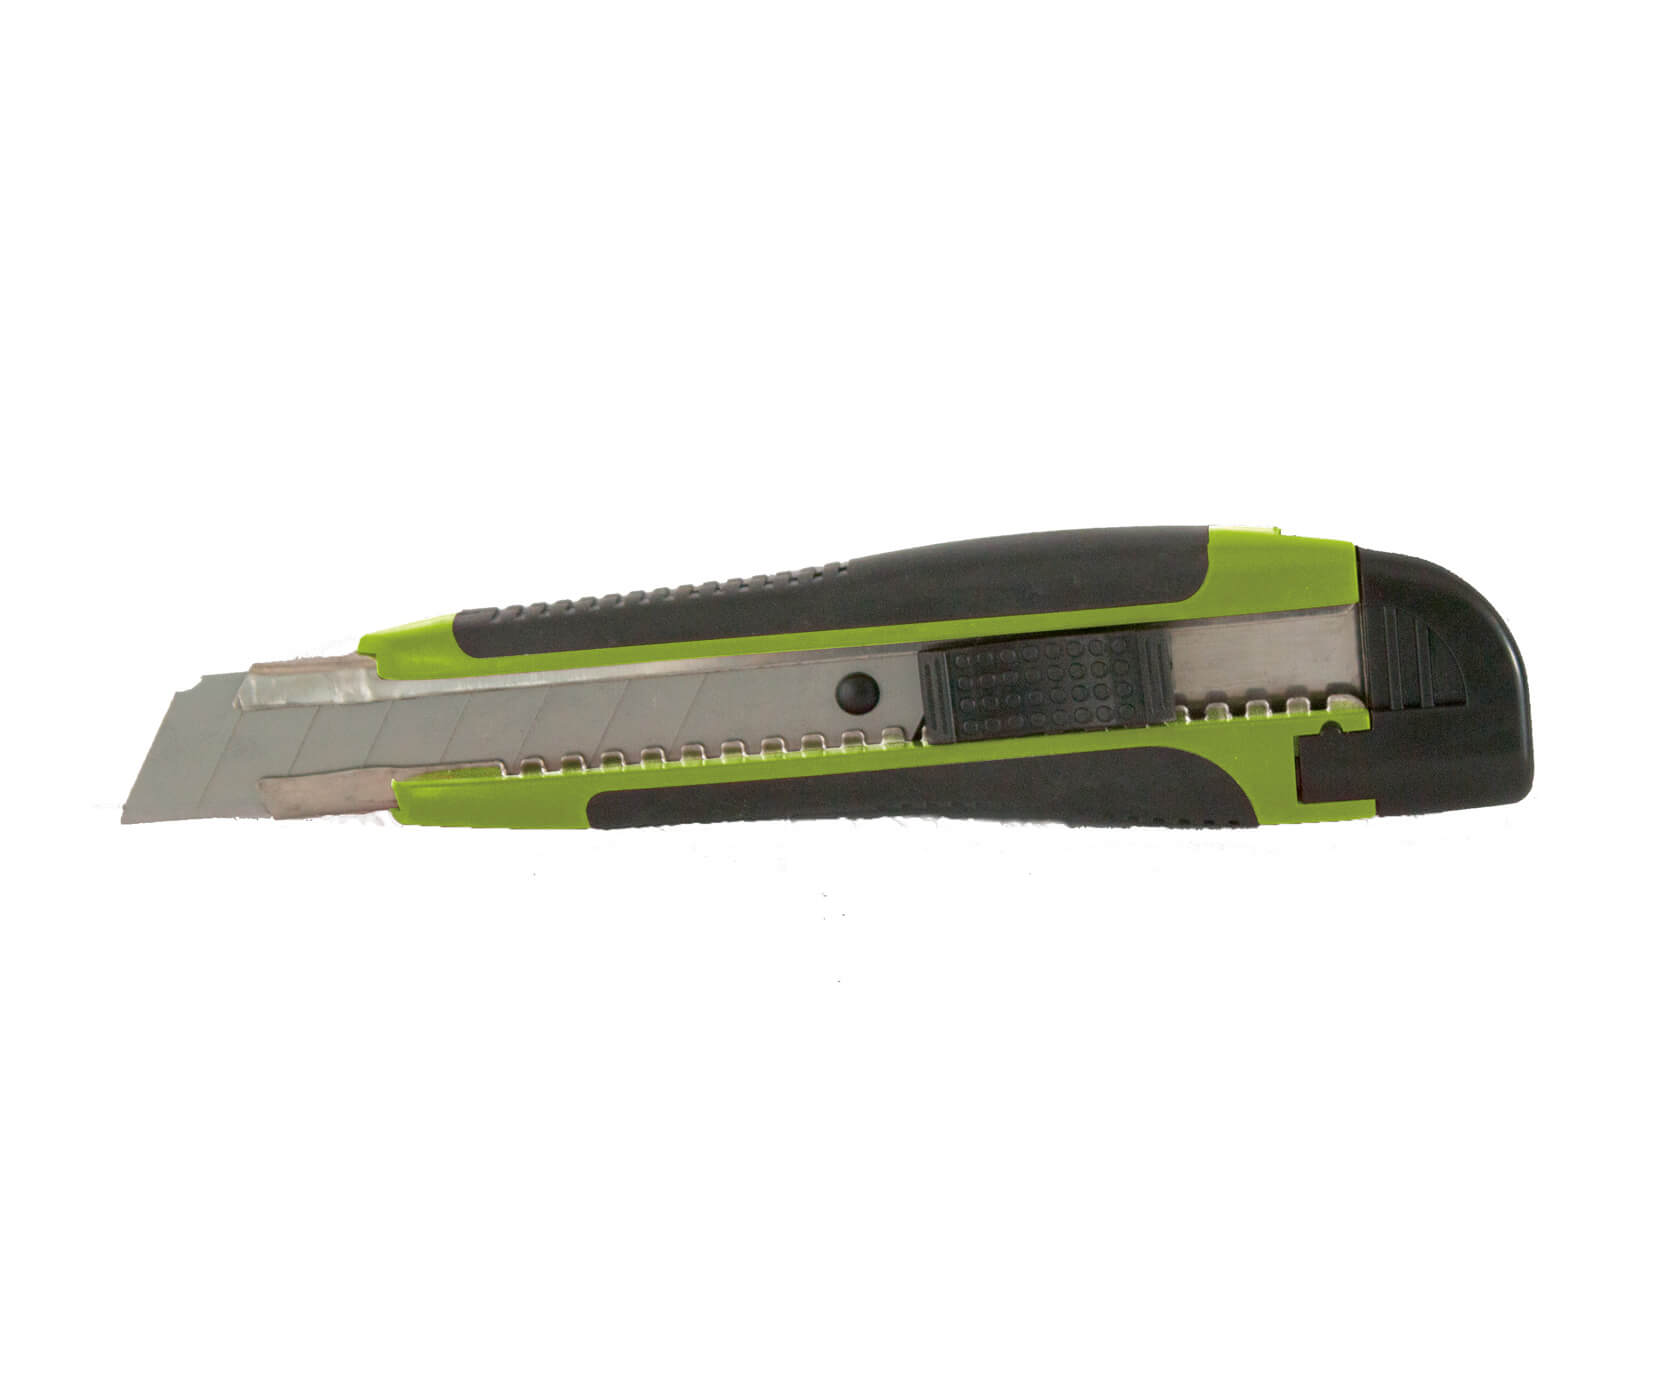 Tradineur - Cúter con 2 cuchillas de recambio, superficie antideslizante,  cutter con hoja de 110 x 18 mm, bloqueo de seguridad